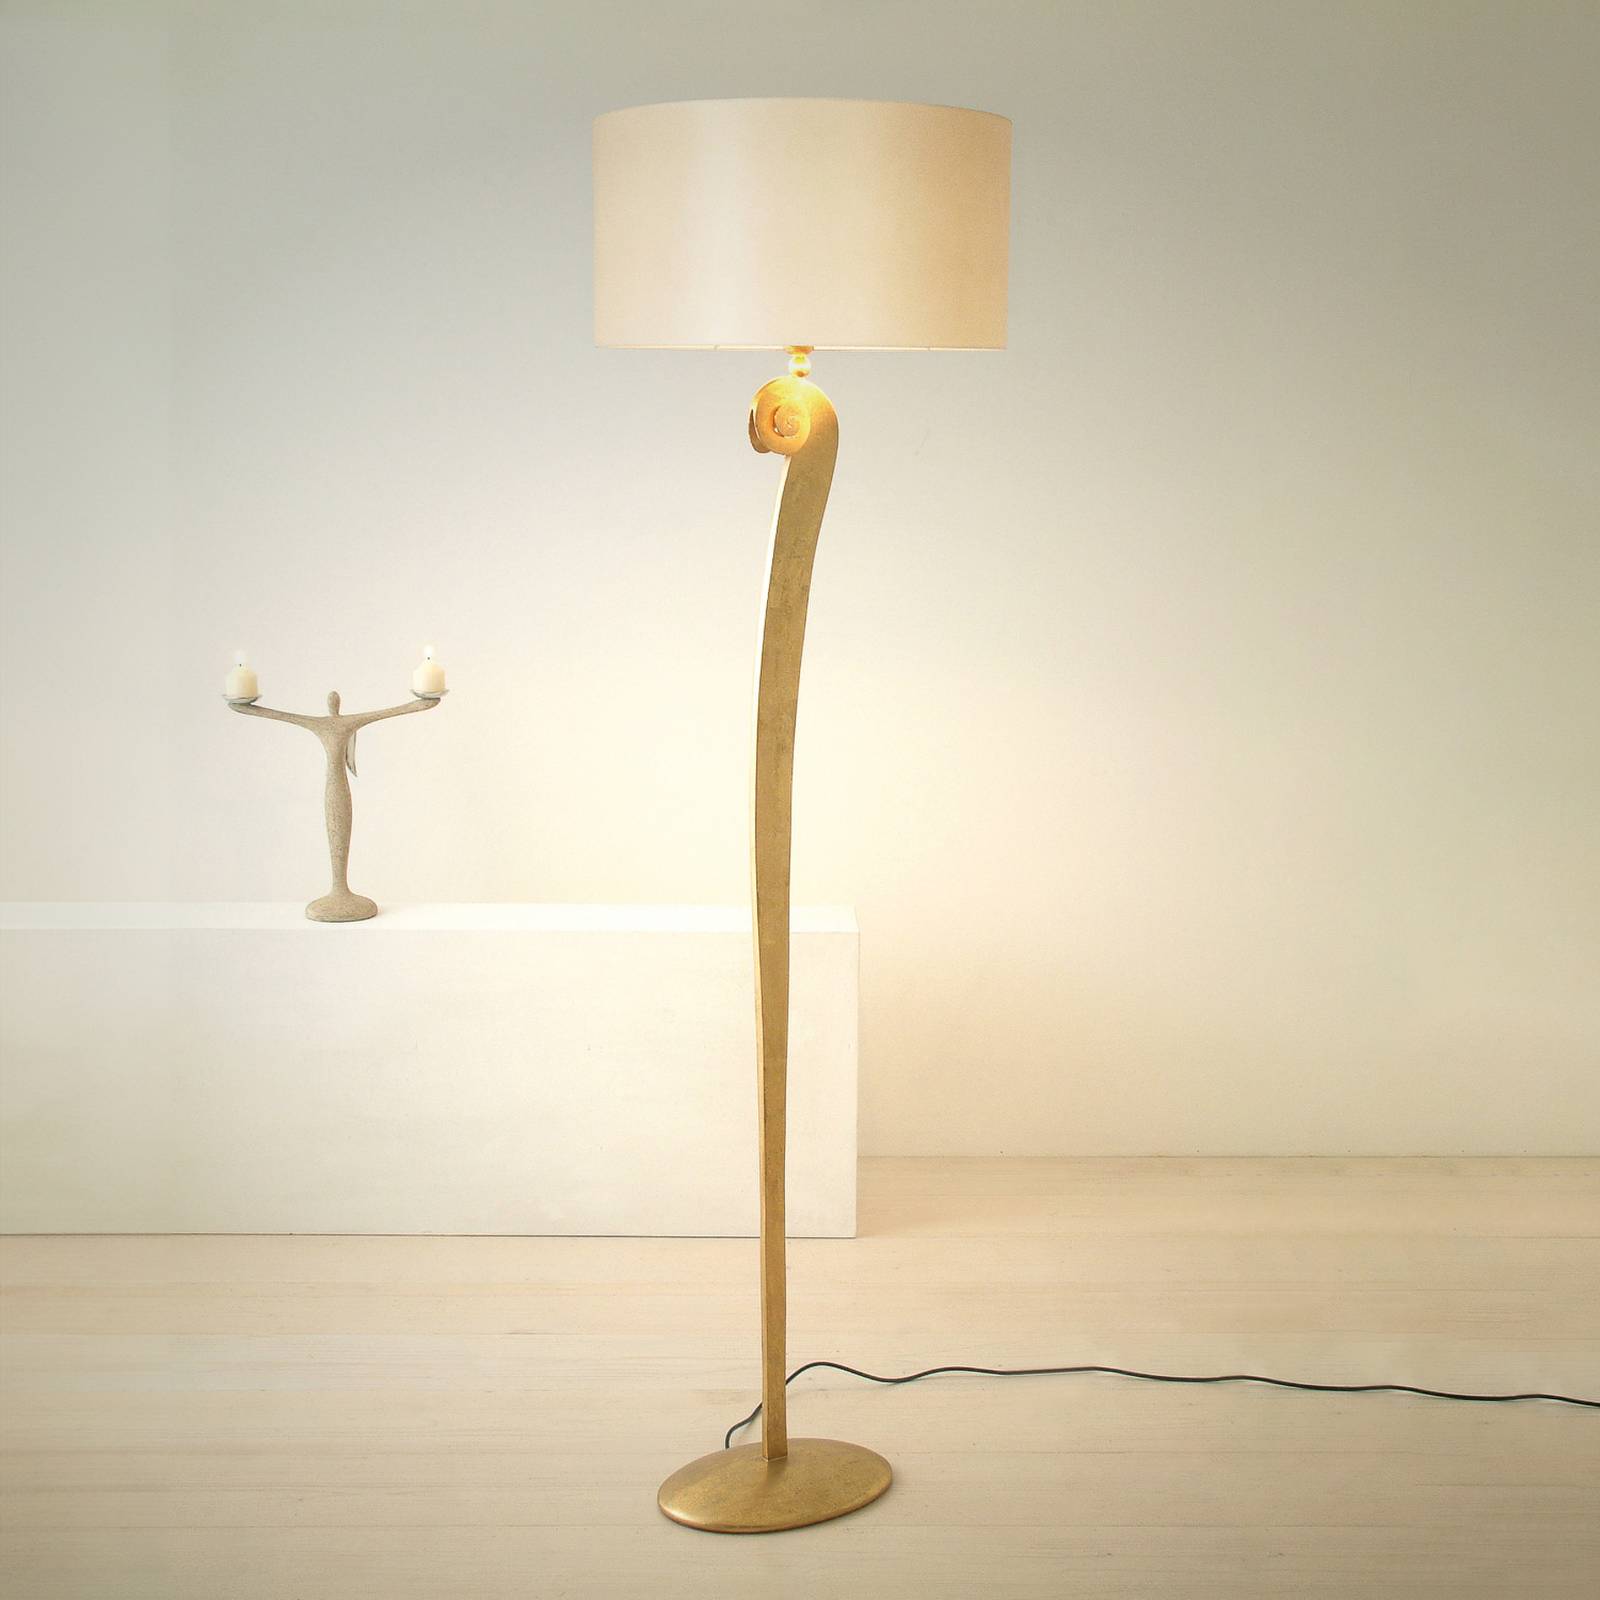 E-shop Stojacia lampa Lino, farba zlatá/eku, výška 160 cm, železo